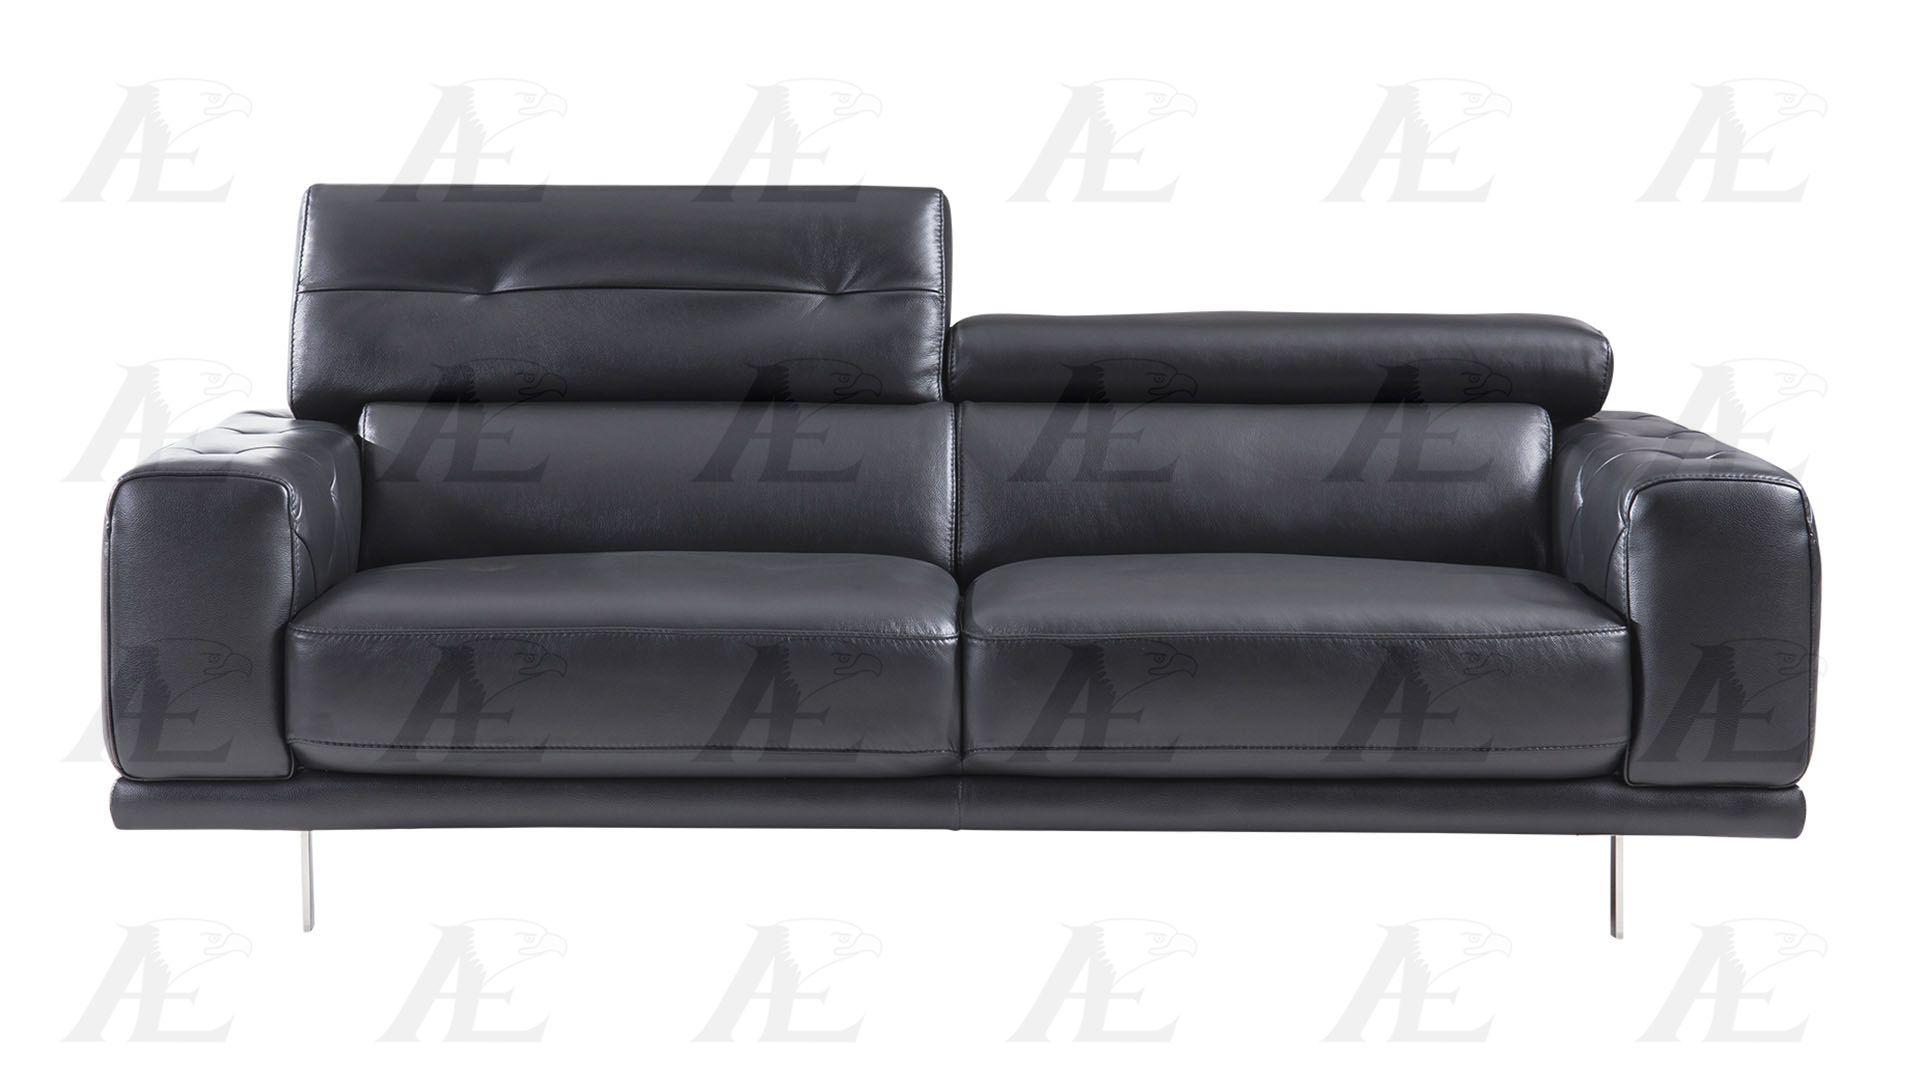 

                    
American Eagle Furniture EK039-BK Sofa Black Italian Leather Purchase 
